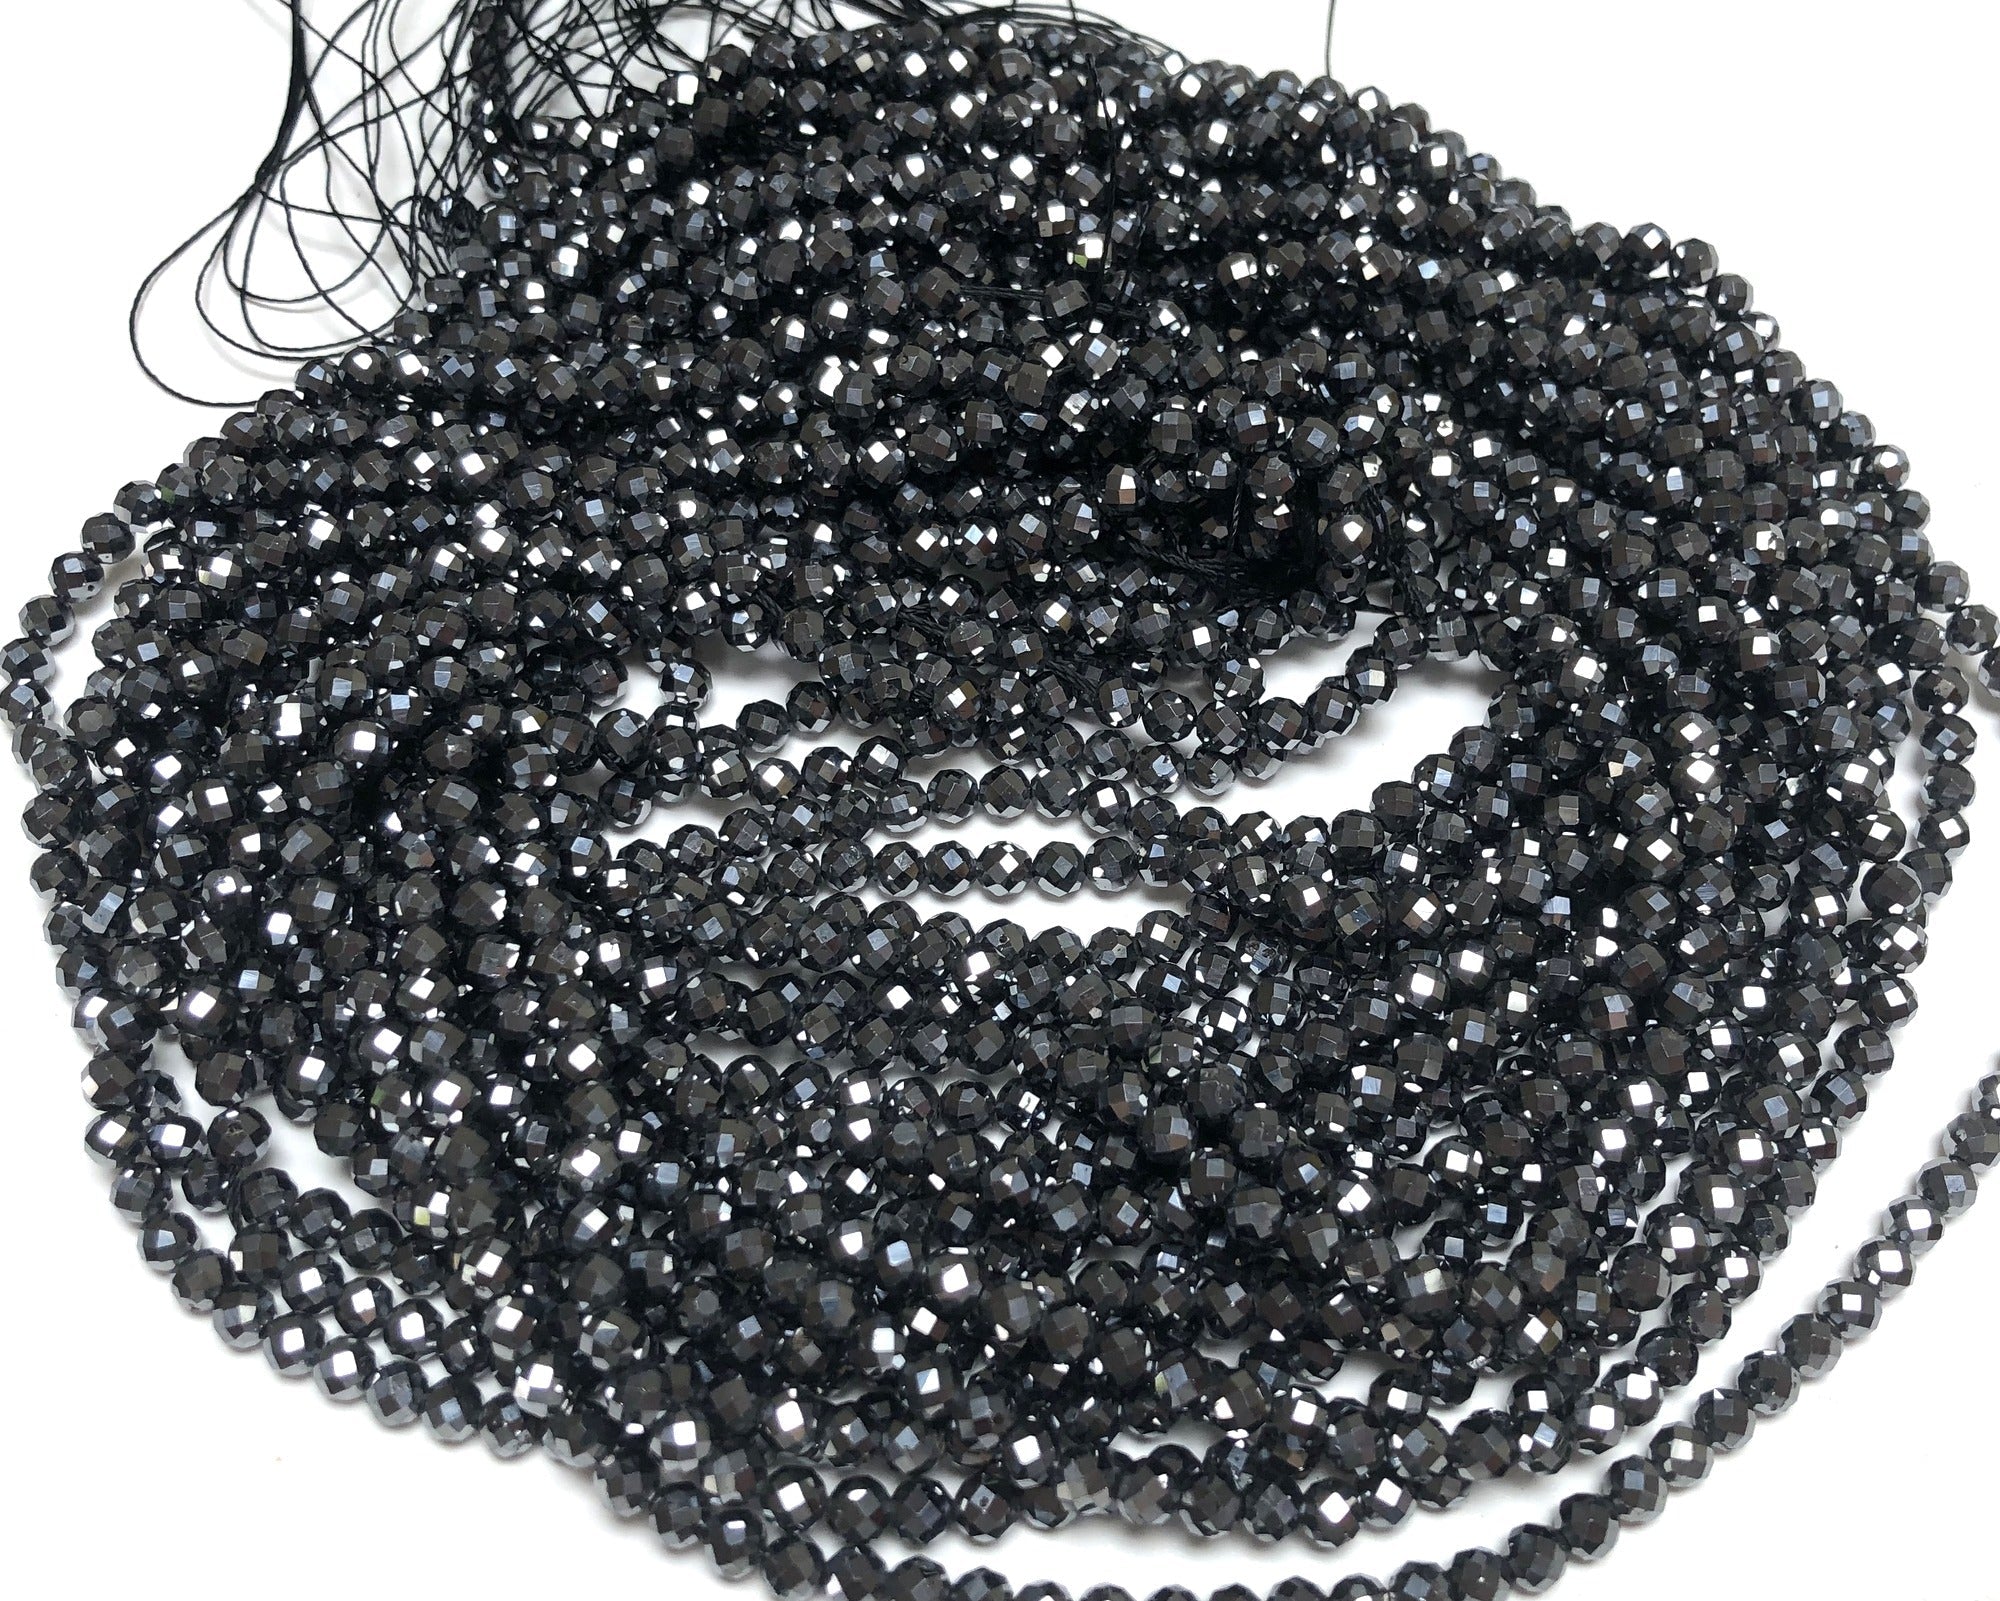 Terahertz 3mm 4mm faceted genuine Terahertz energy stone beads 15.5" strand